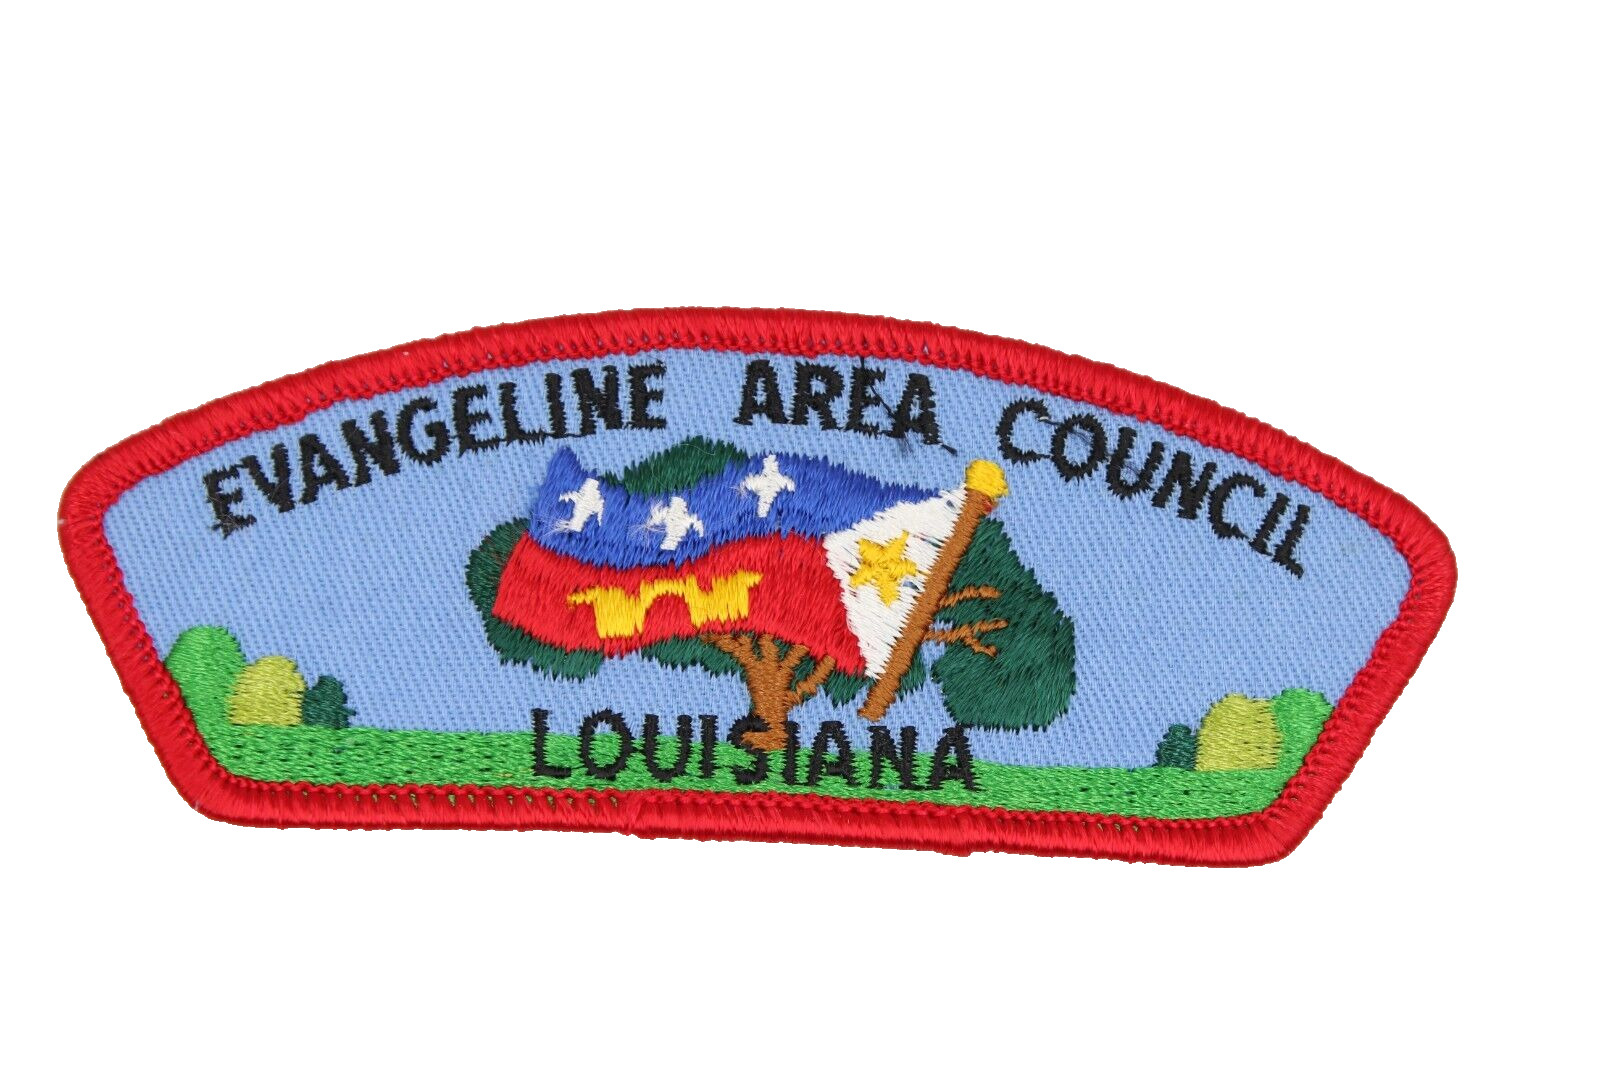 Evangeline Area Council CSP Louisiana LA Boy Scouts Patch BSA 